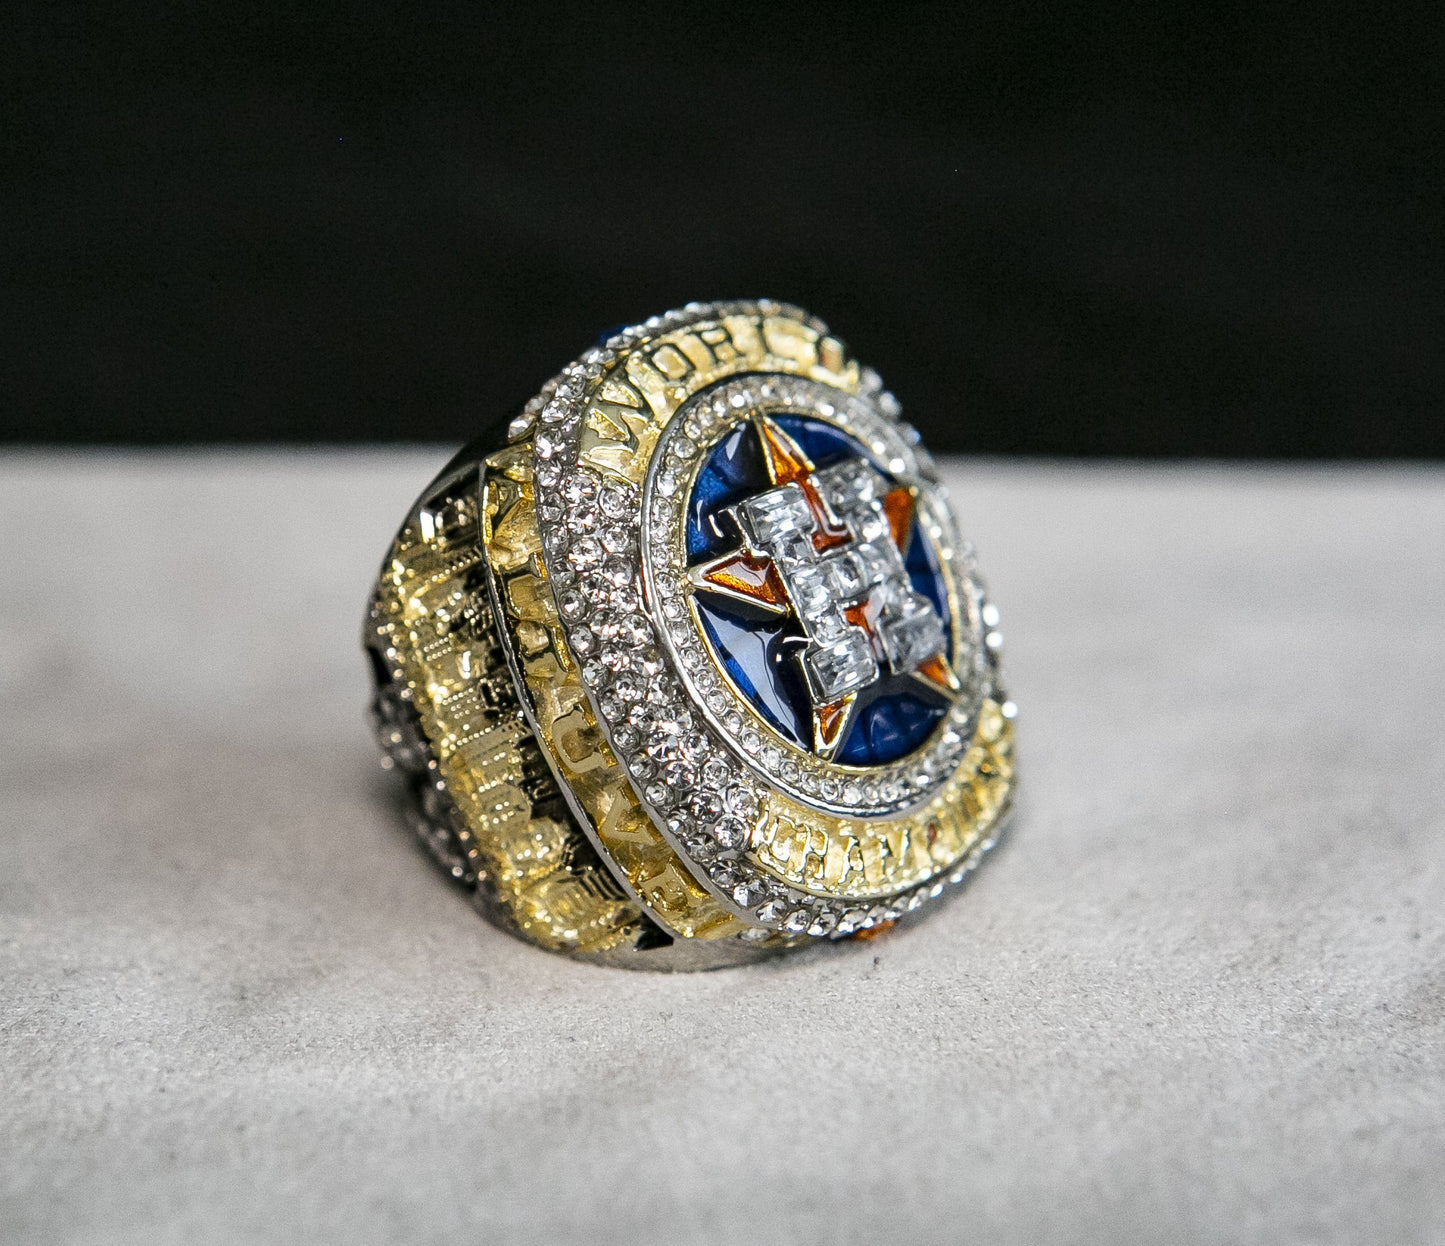 Houston Astros World Series Ring (2017) - Rings For Champs, NFL rings, MLB rings, NBA rings, NHL rings, NCAA rings, Super bowl ring, Superbowl ring, Super bowl rings, Superbowl rings, Dallas Cowboys